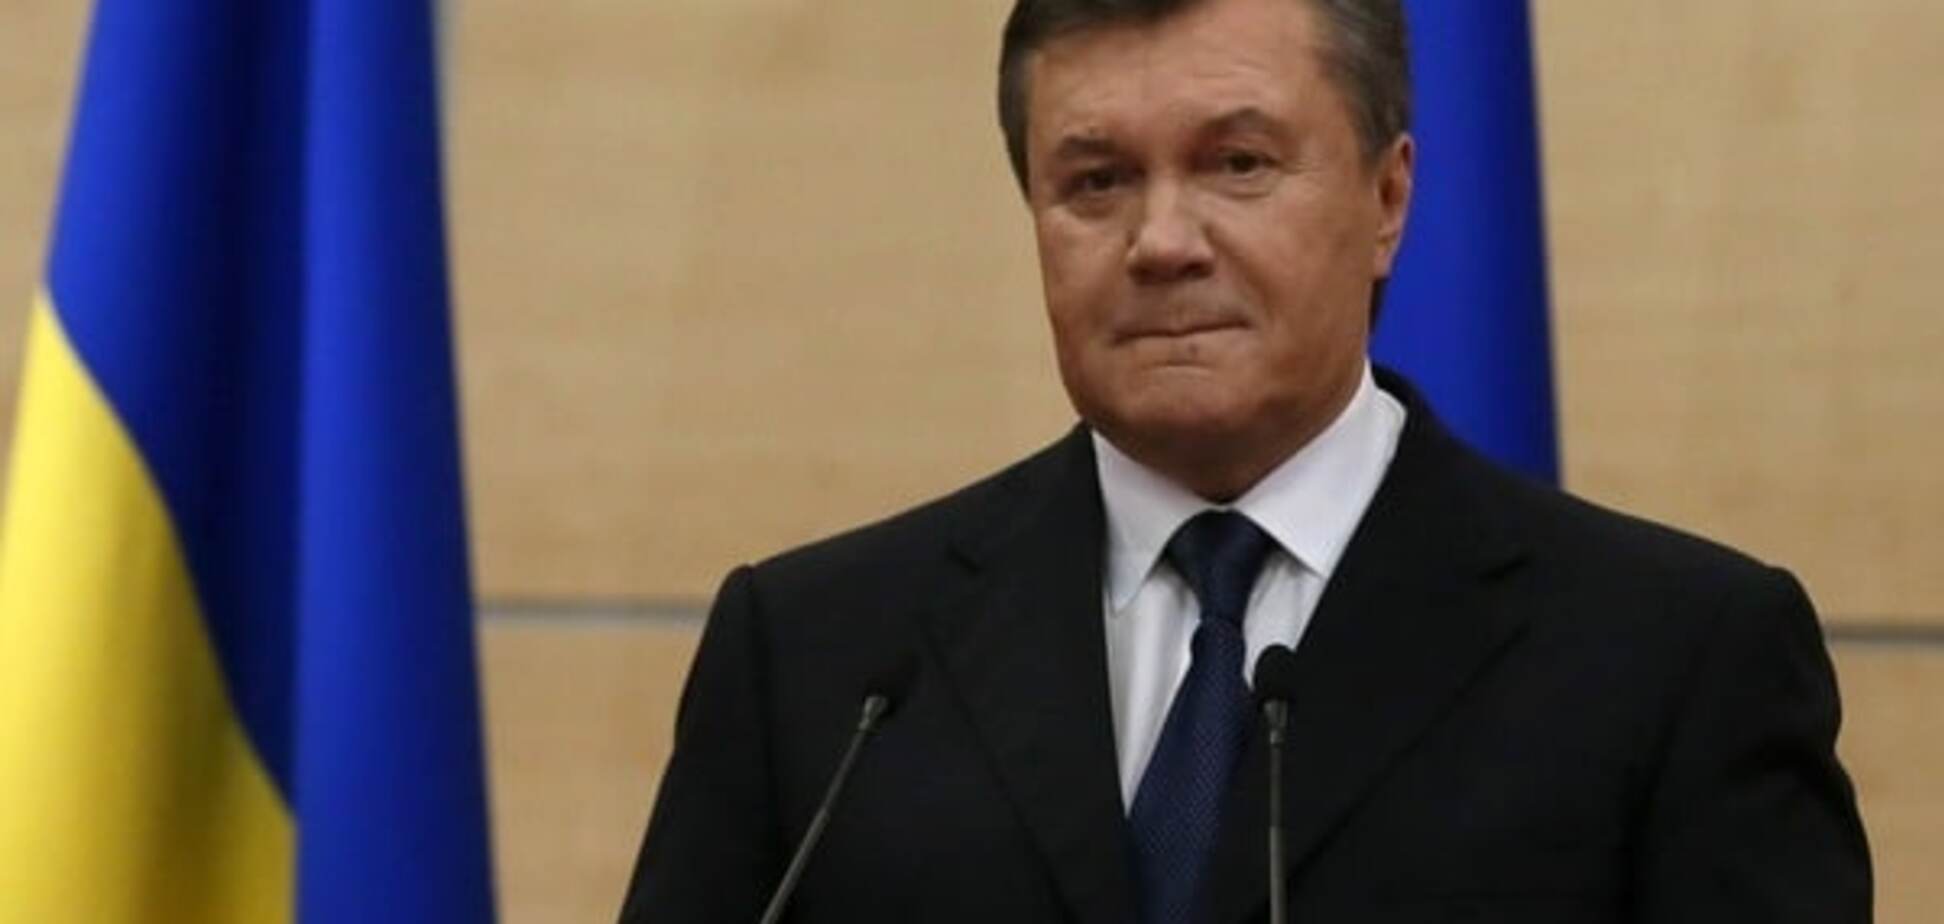 ГПУ приобщила найденный архив Януковича к уголовным делам против него